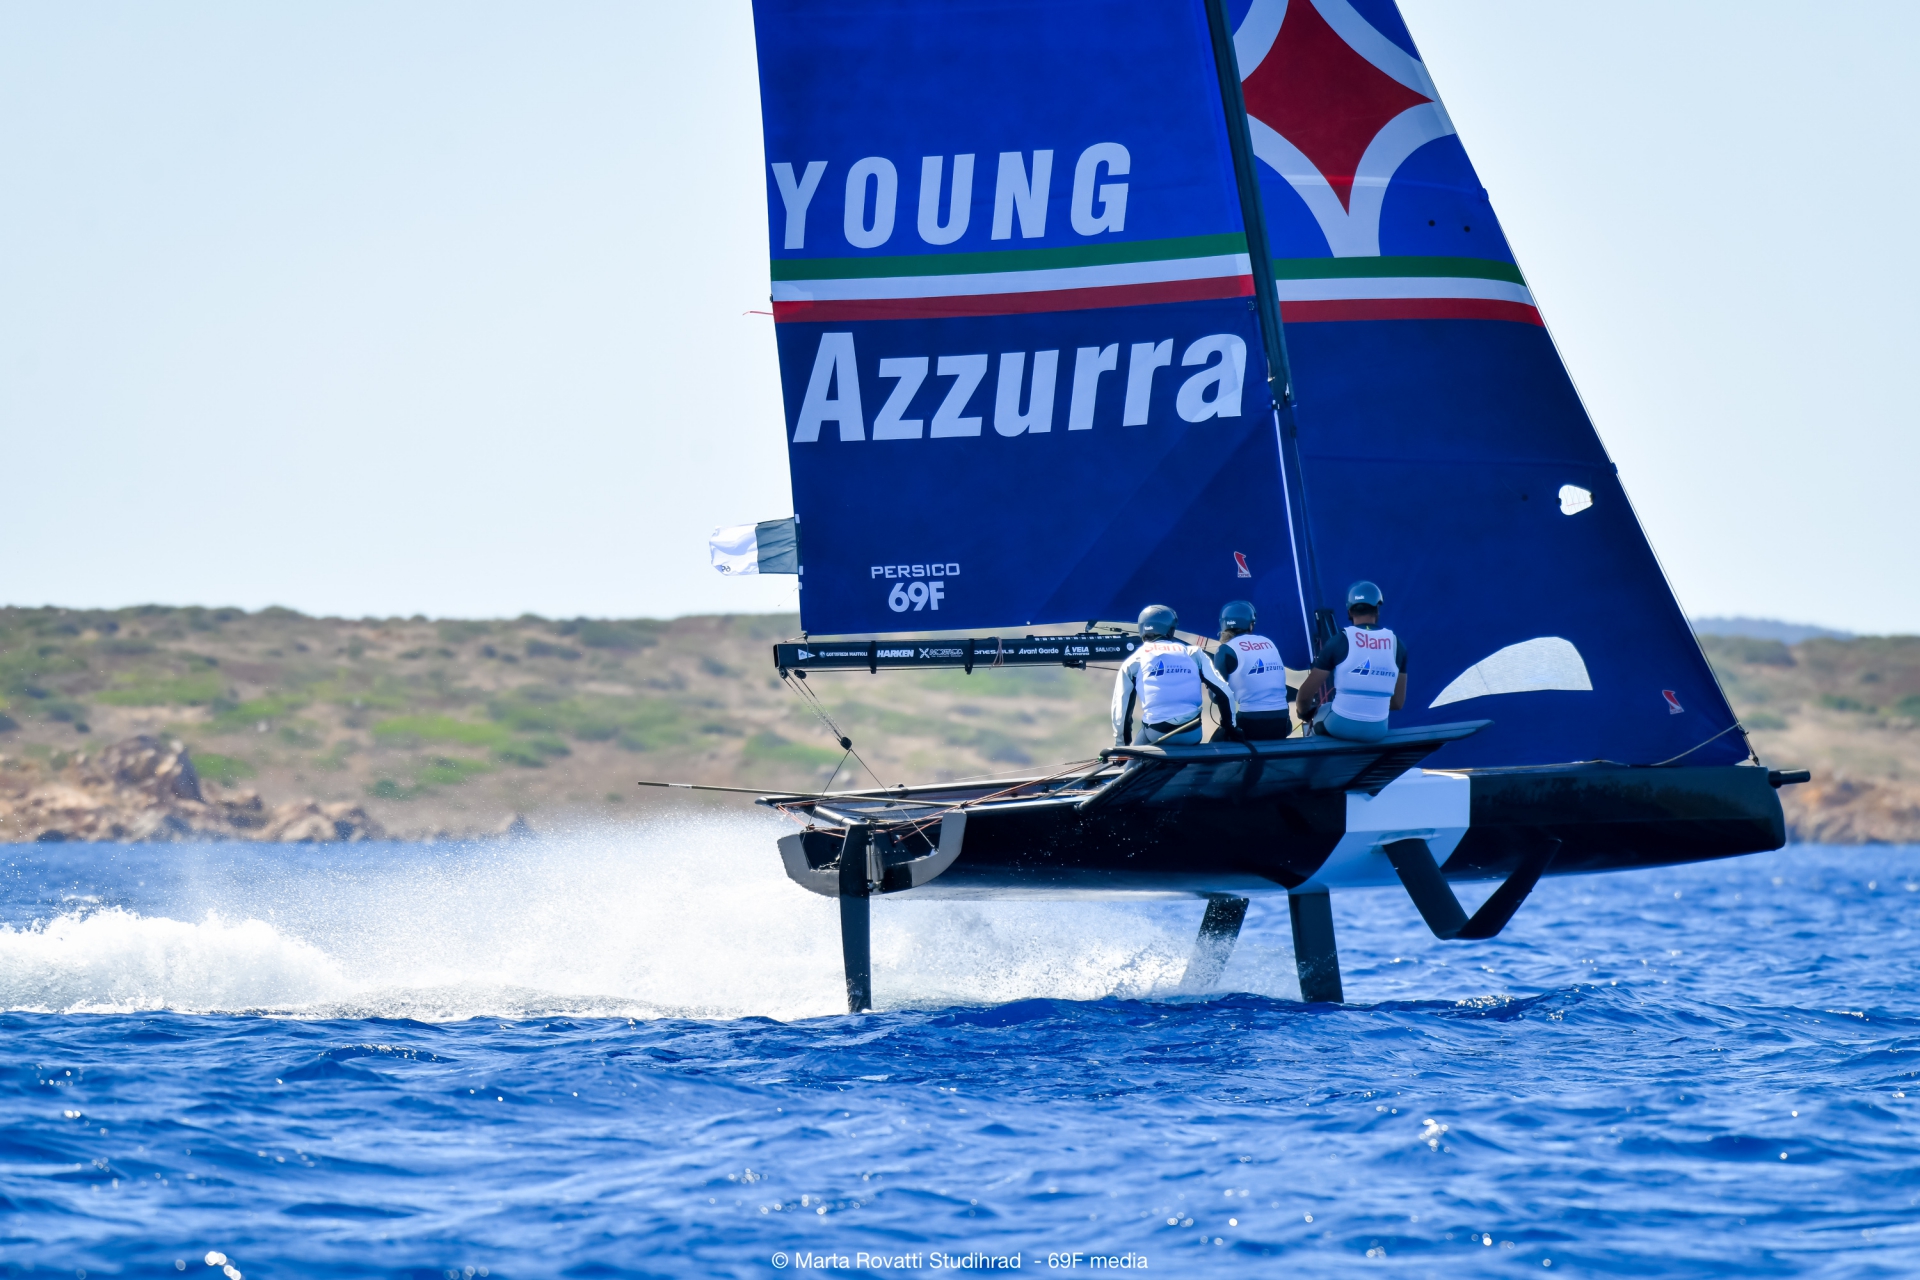 Con il Grand Finale della Youth Foiling Gold Cup si conclude il progetto Young Azzurra - News - Yacht Club Costa Smeralda